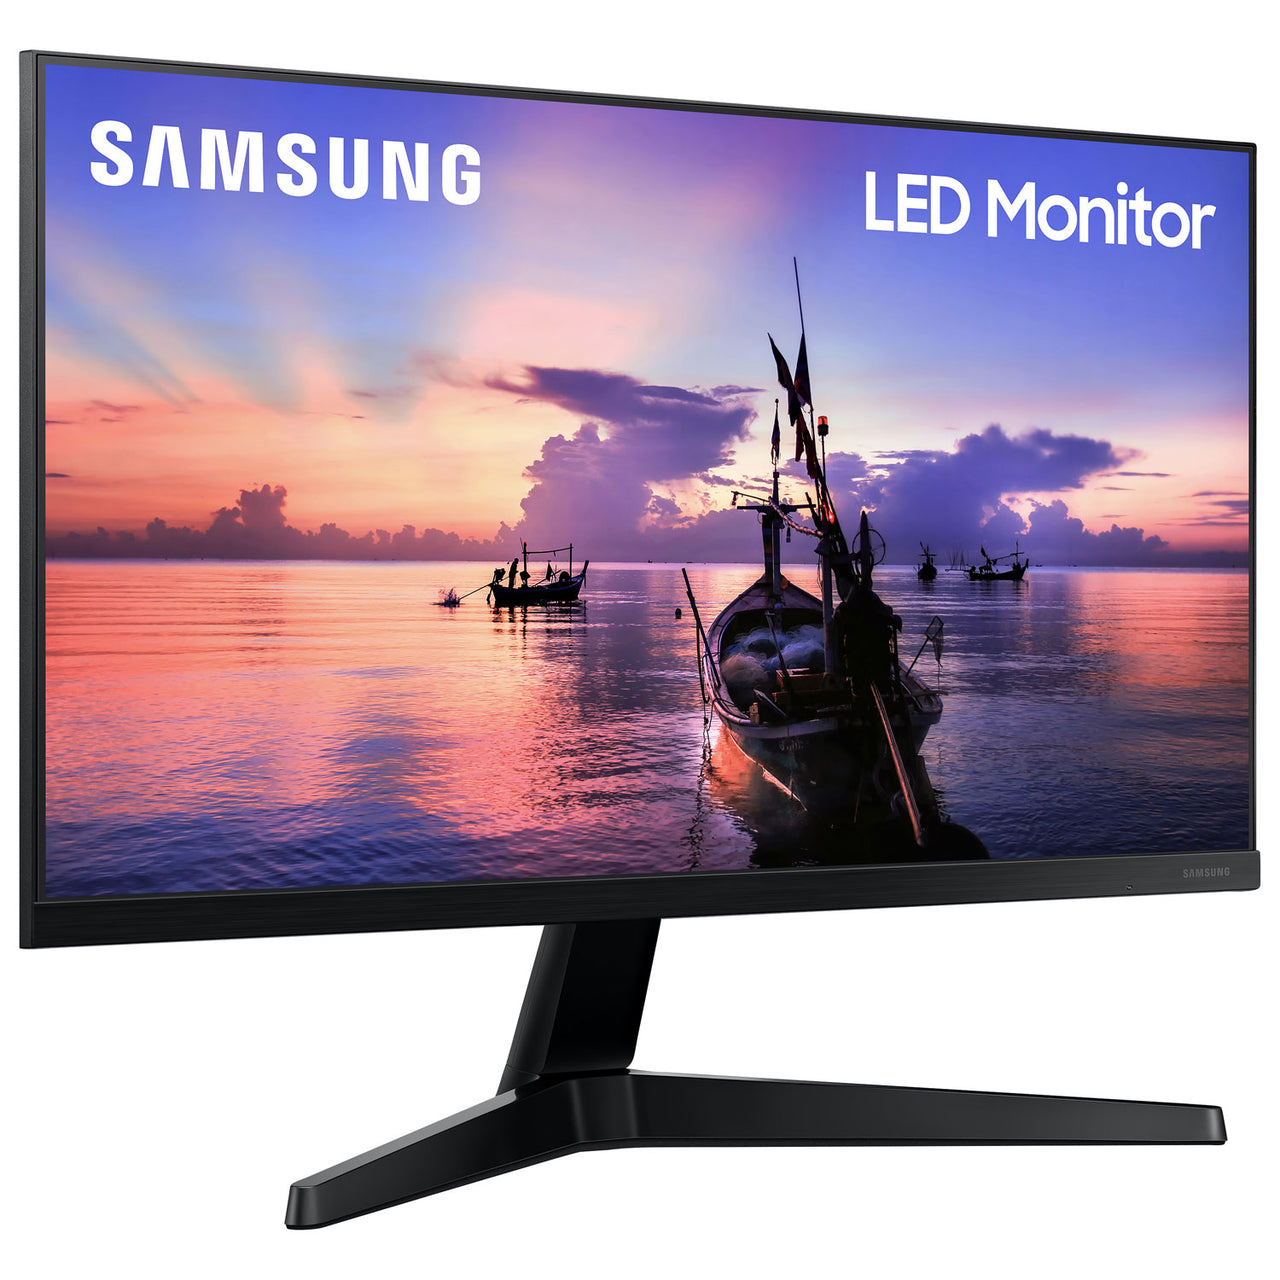 Samsung 27" FHD 75Hz 5ms GTG IPS LED FreeSync Gaming Monitor (LF27T350FHNXZA) - Dark Blue Grey